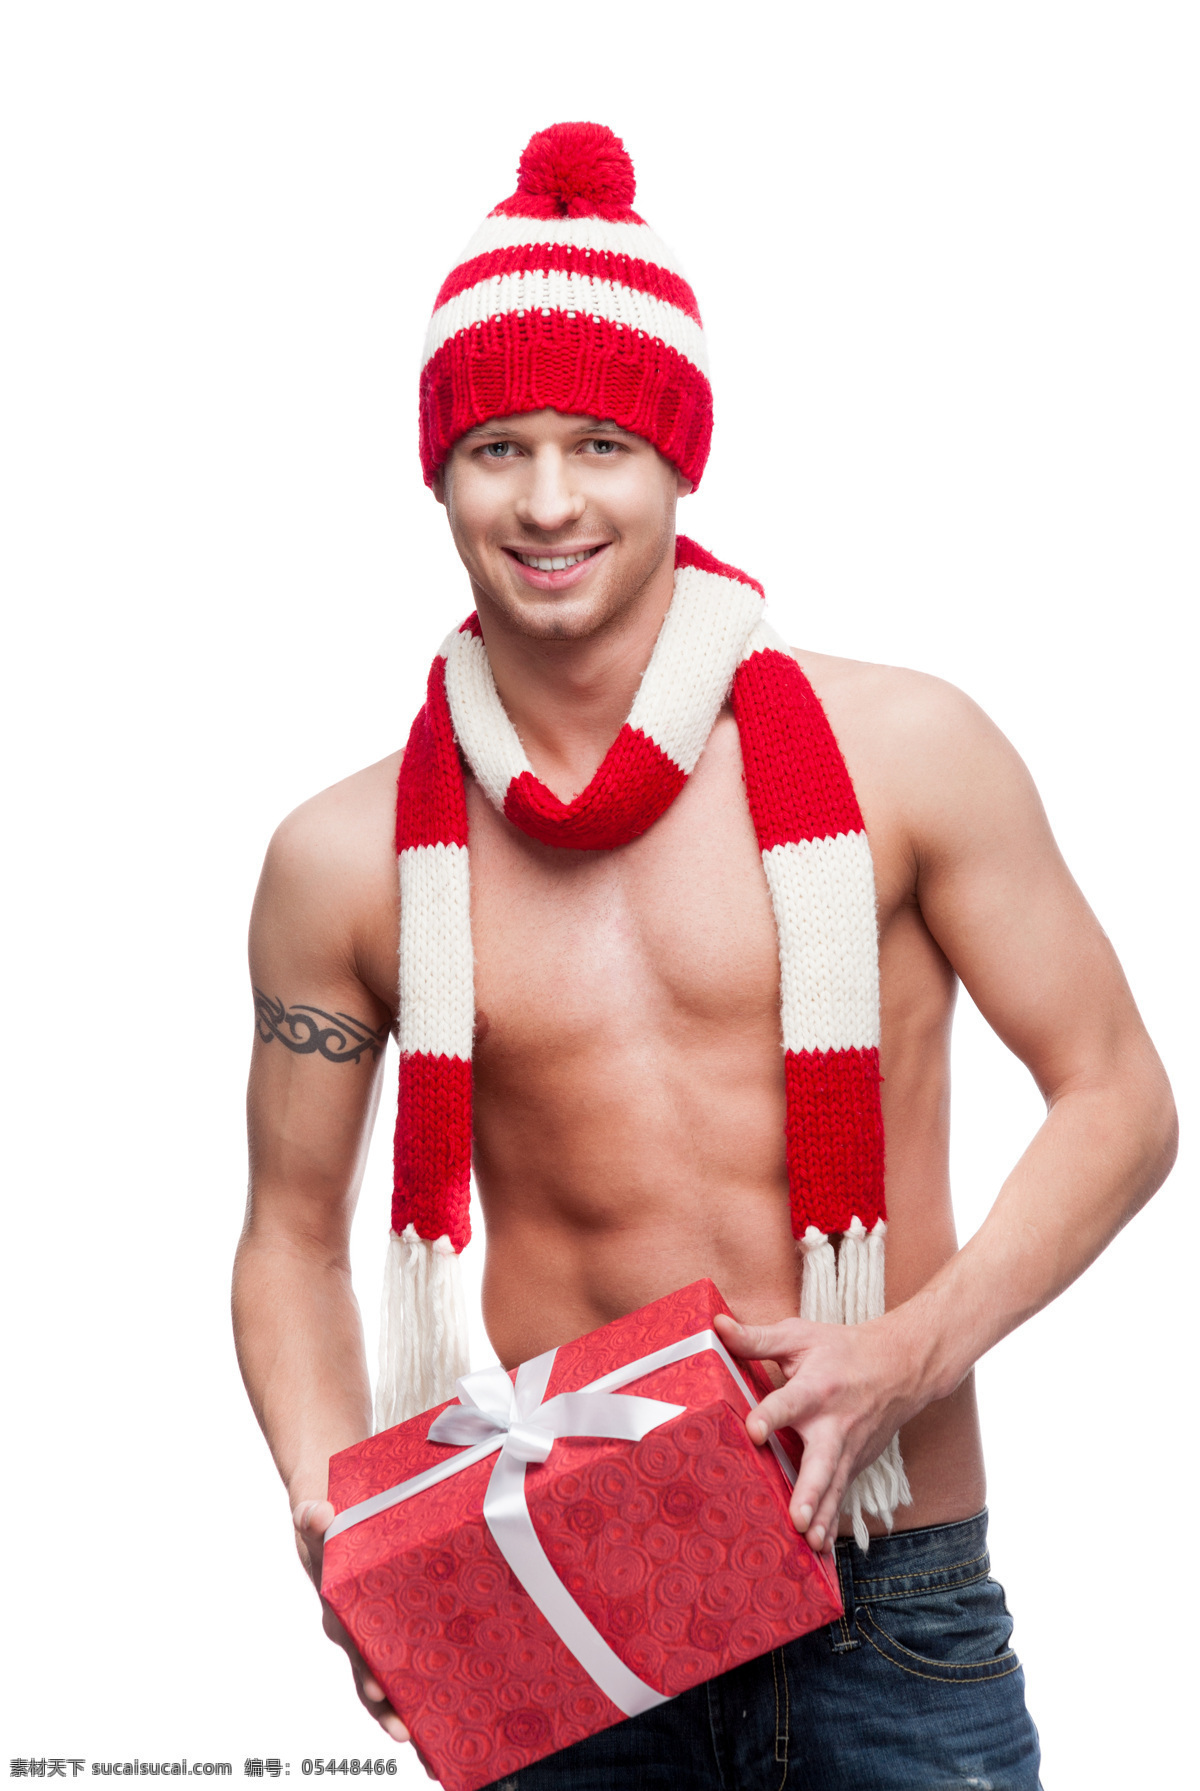 抱 礼物 圣诞 装 男人 圣诞装 外国男性 圣诞礼物 礼品 礼包 围巾 圣诞节素材 新年素材 节日庆典 生活百科